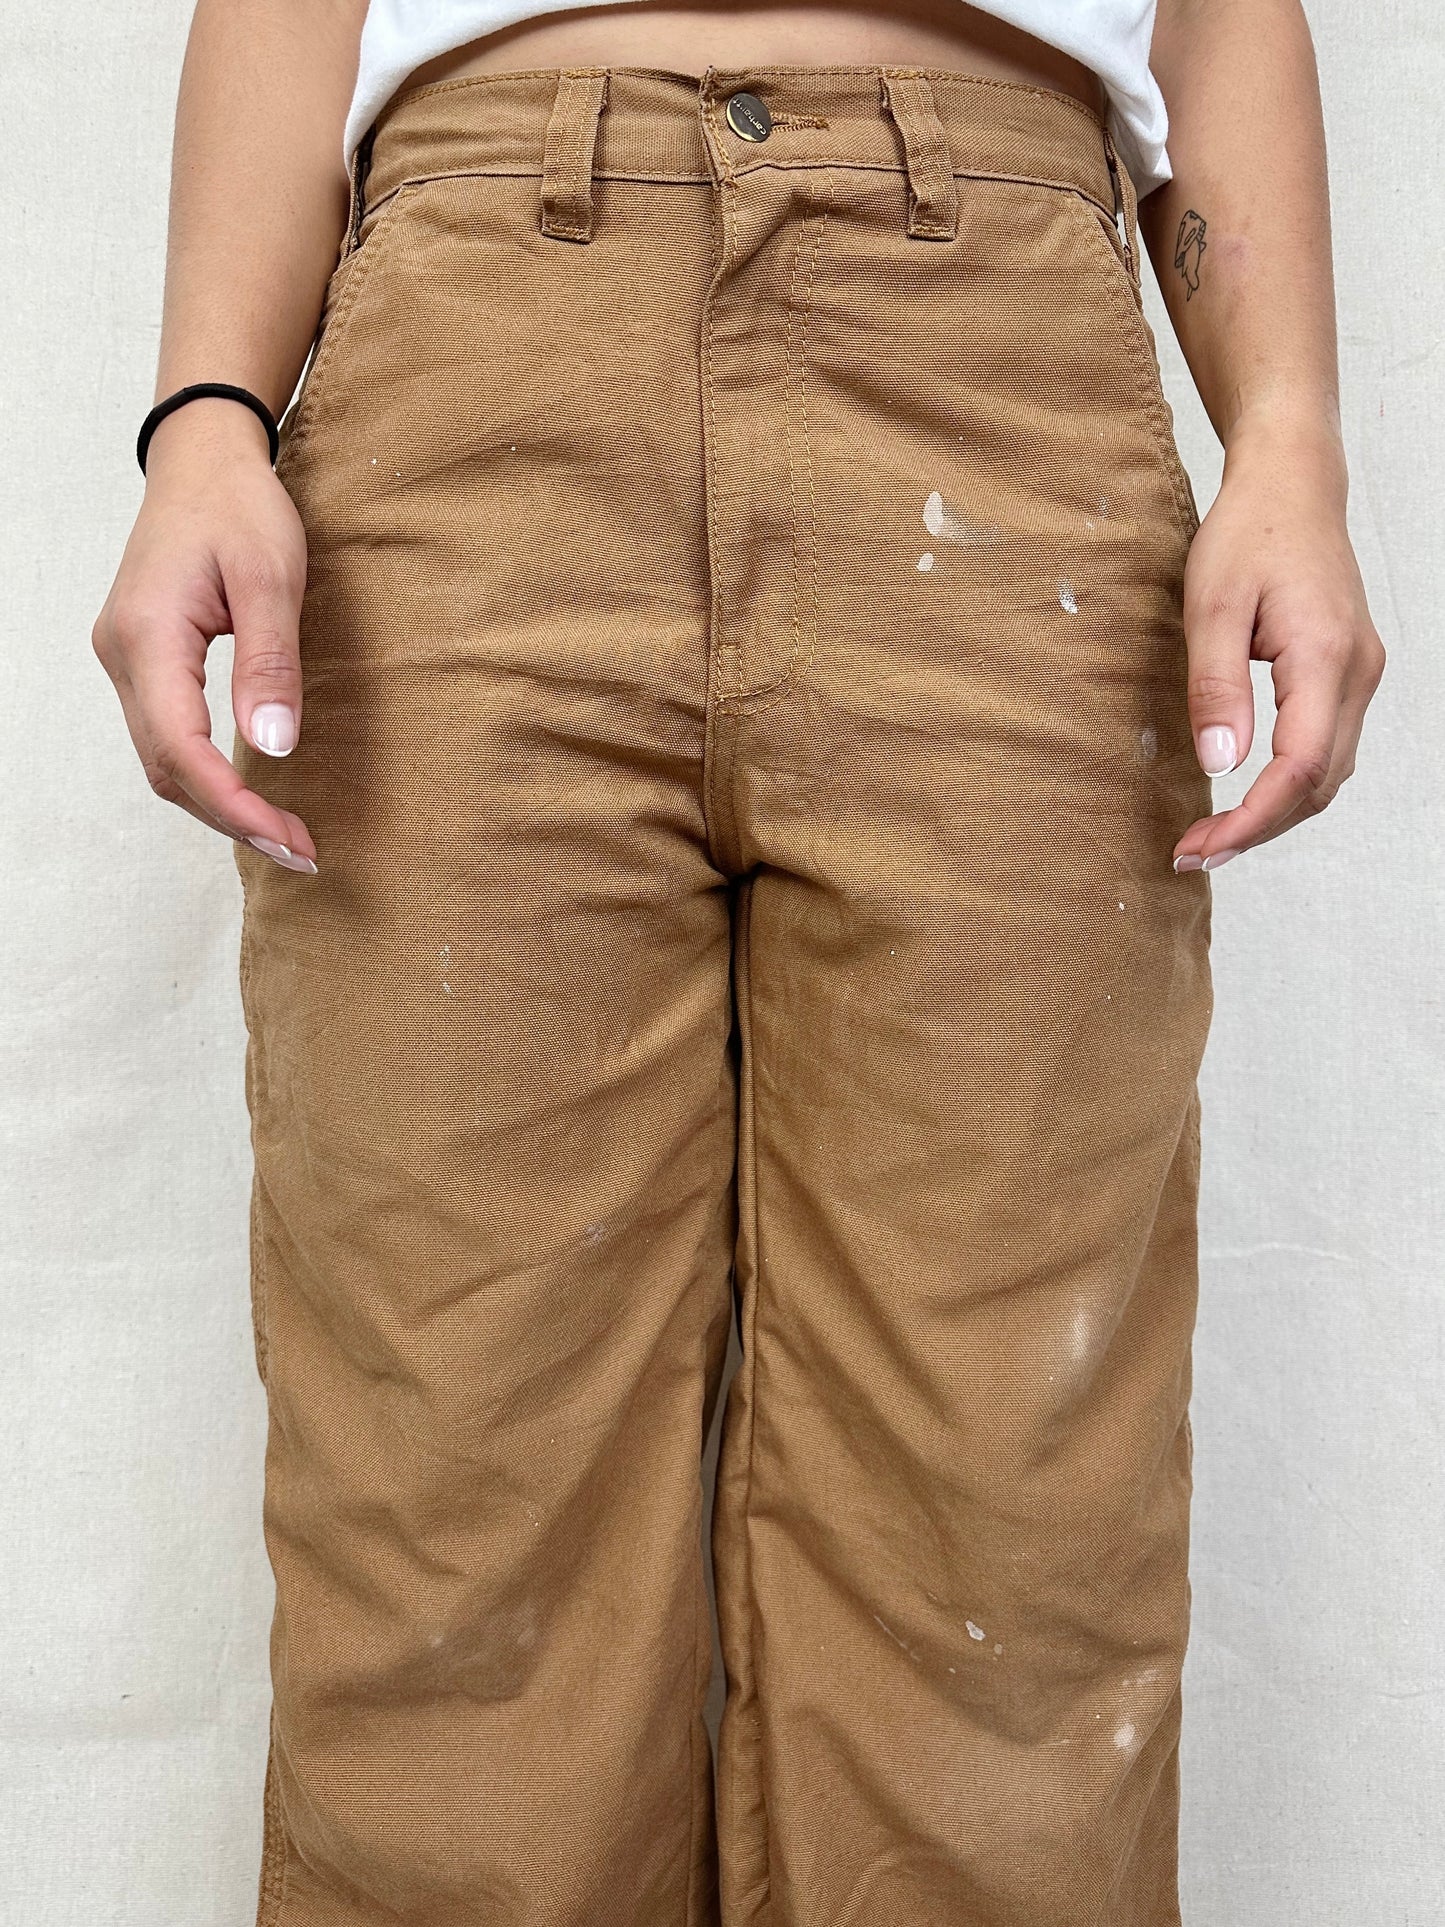 90's Carhartt Vintage Carpenter Pants Size 32x30